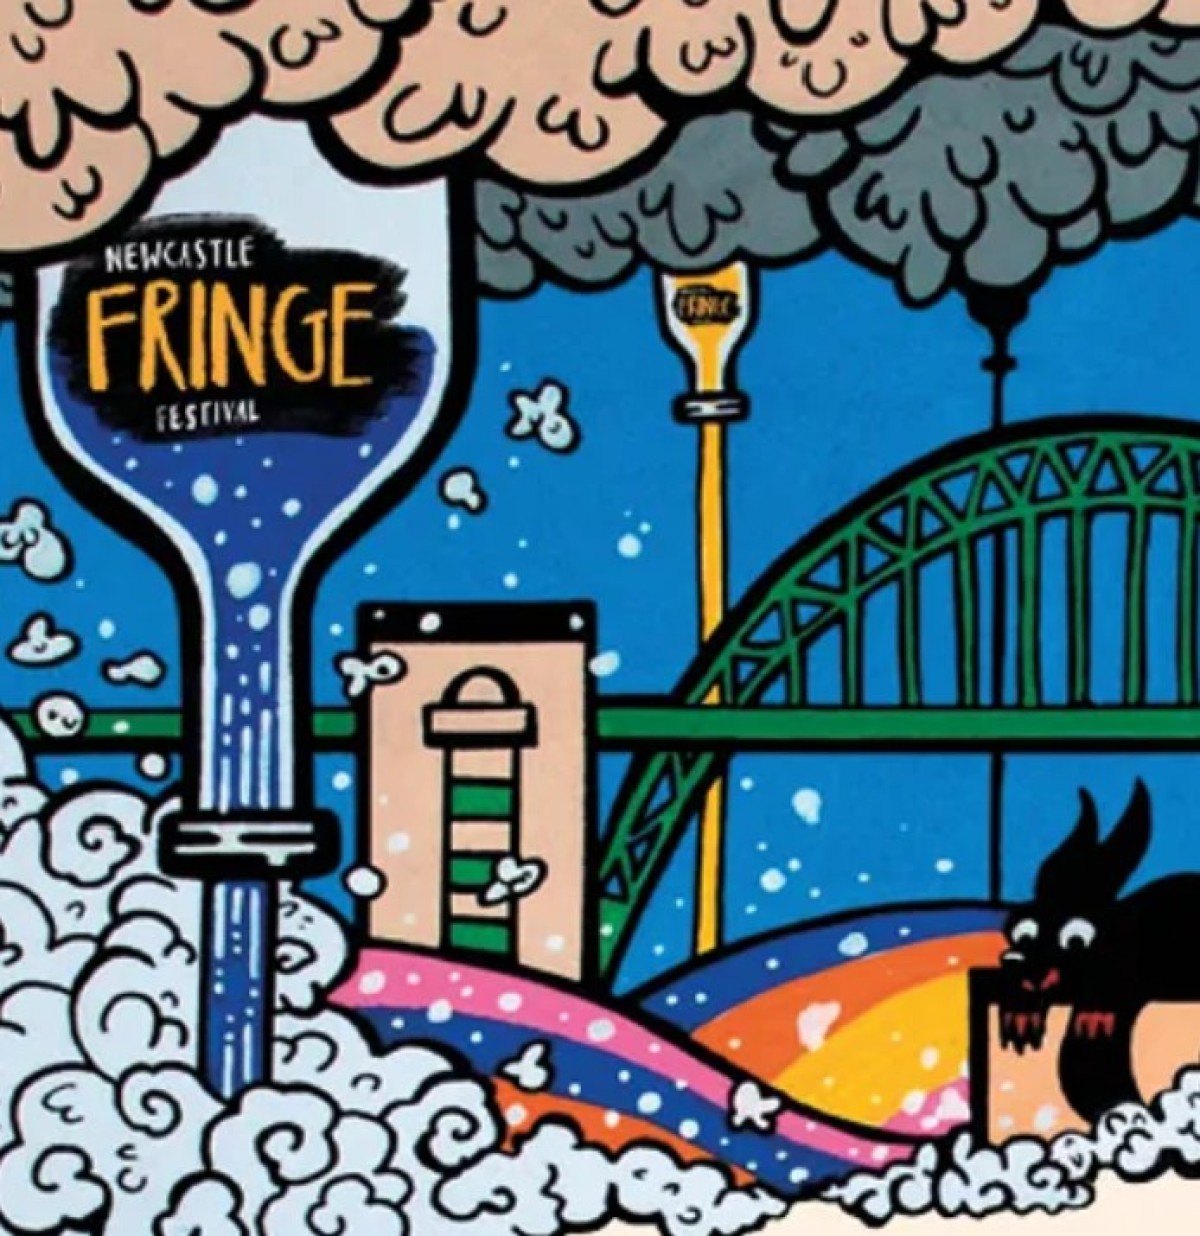 Newcastle Fringe 2023 (July Events)